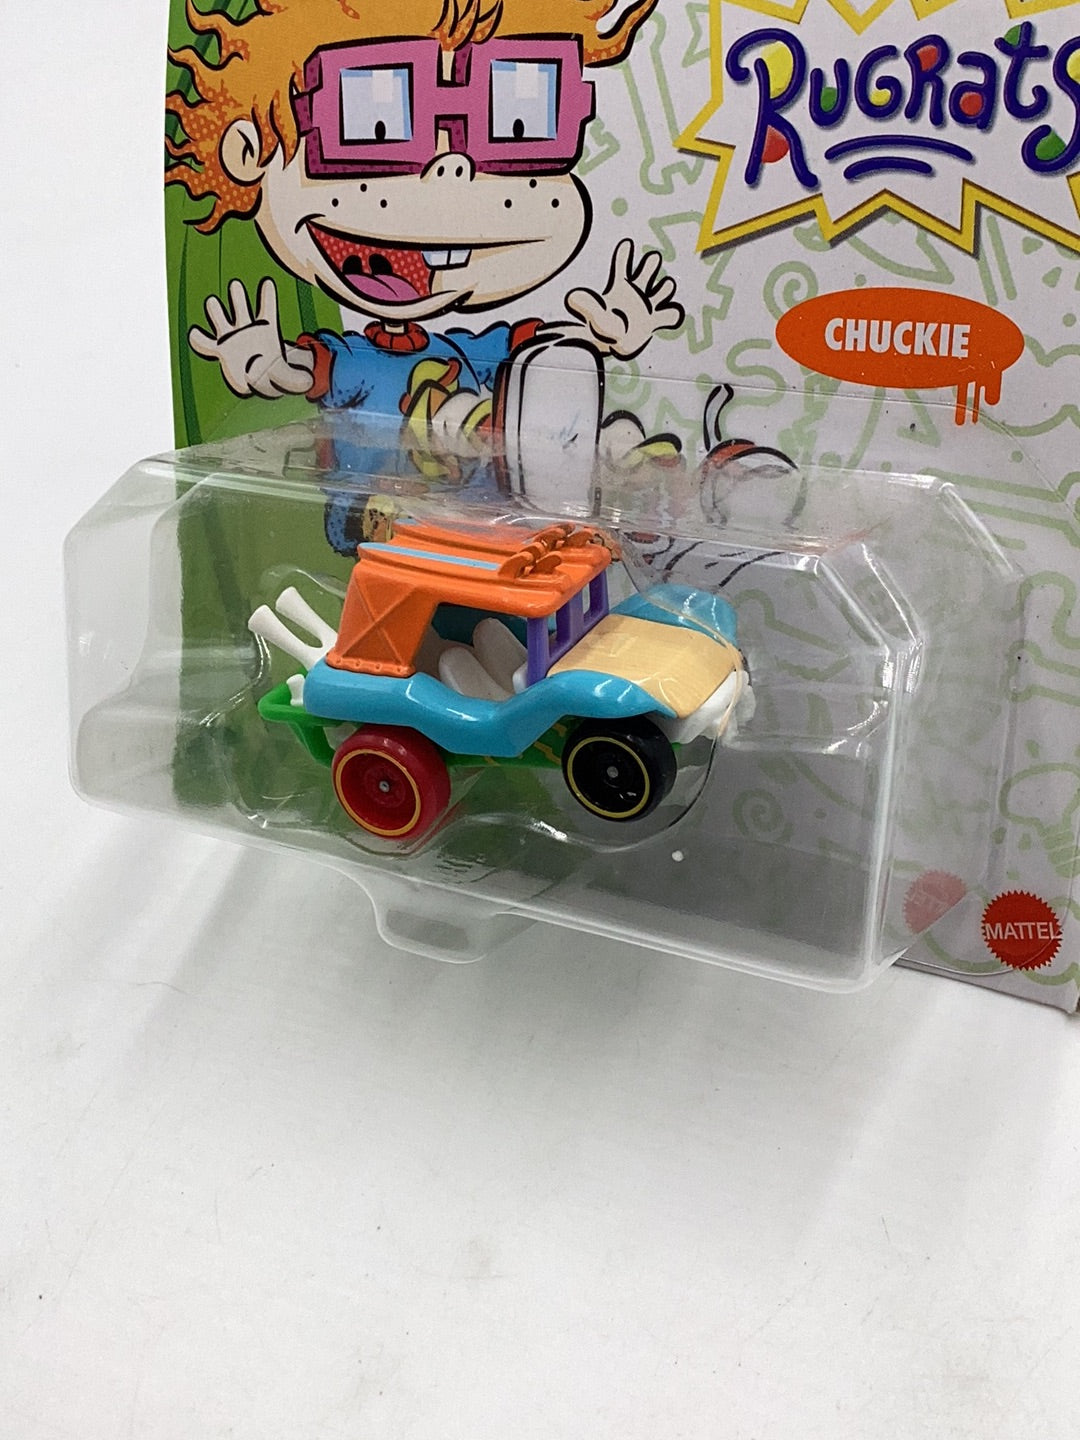 Hot Wheels Character Cars Nickelodeon Rugrats Chuckie 112F